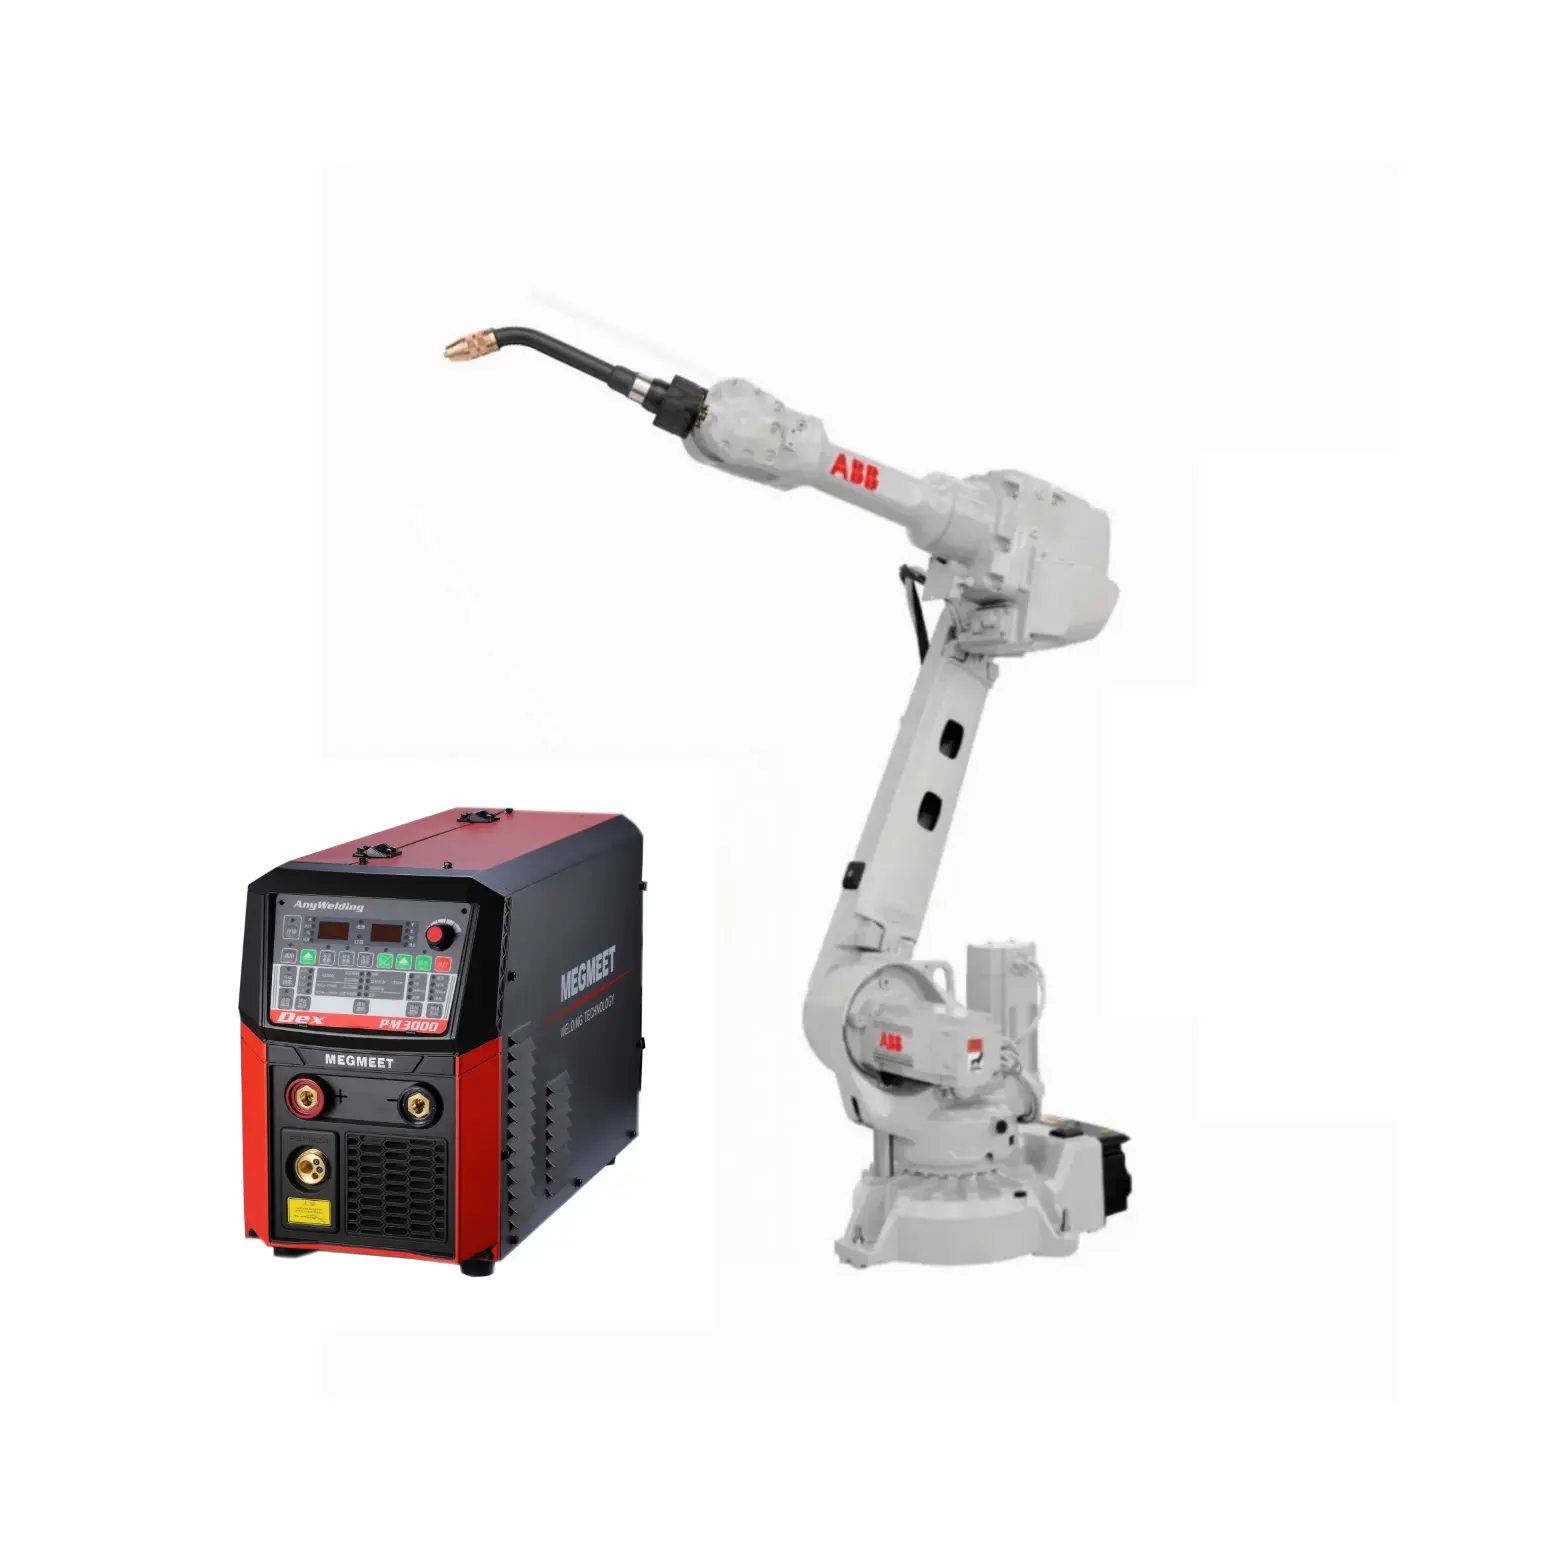 IRB-2600-20/1,65 промышленный робот-манипулятор, 6 осей, сварочный робот с источником питания, CM-350 для автоматической сварки